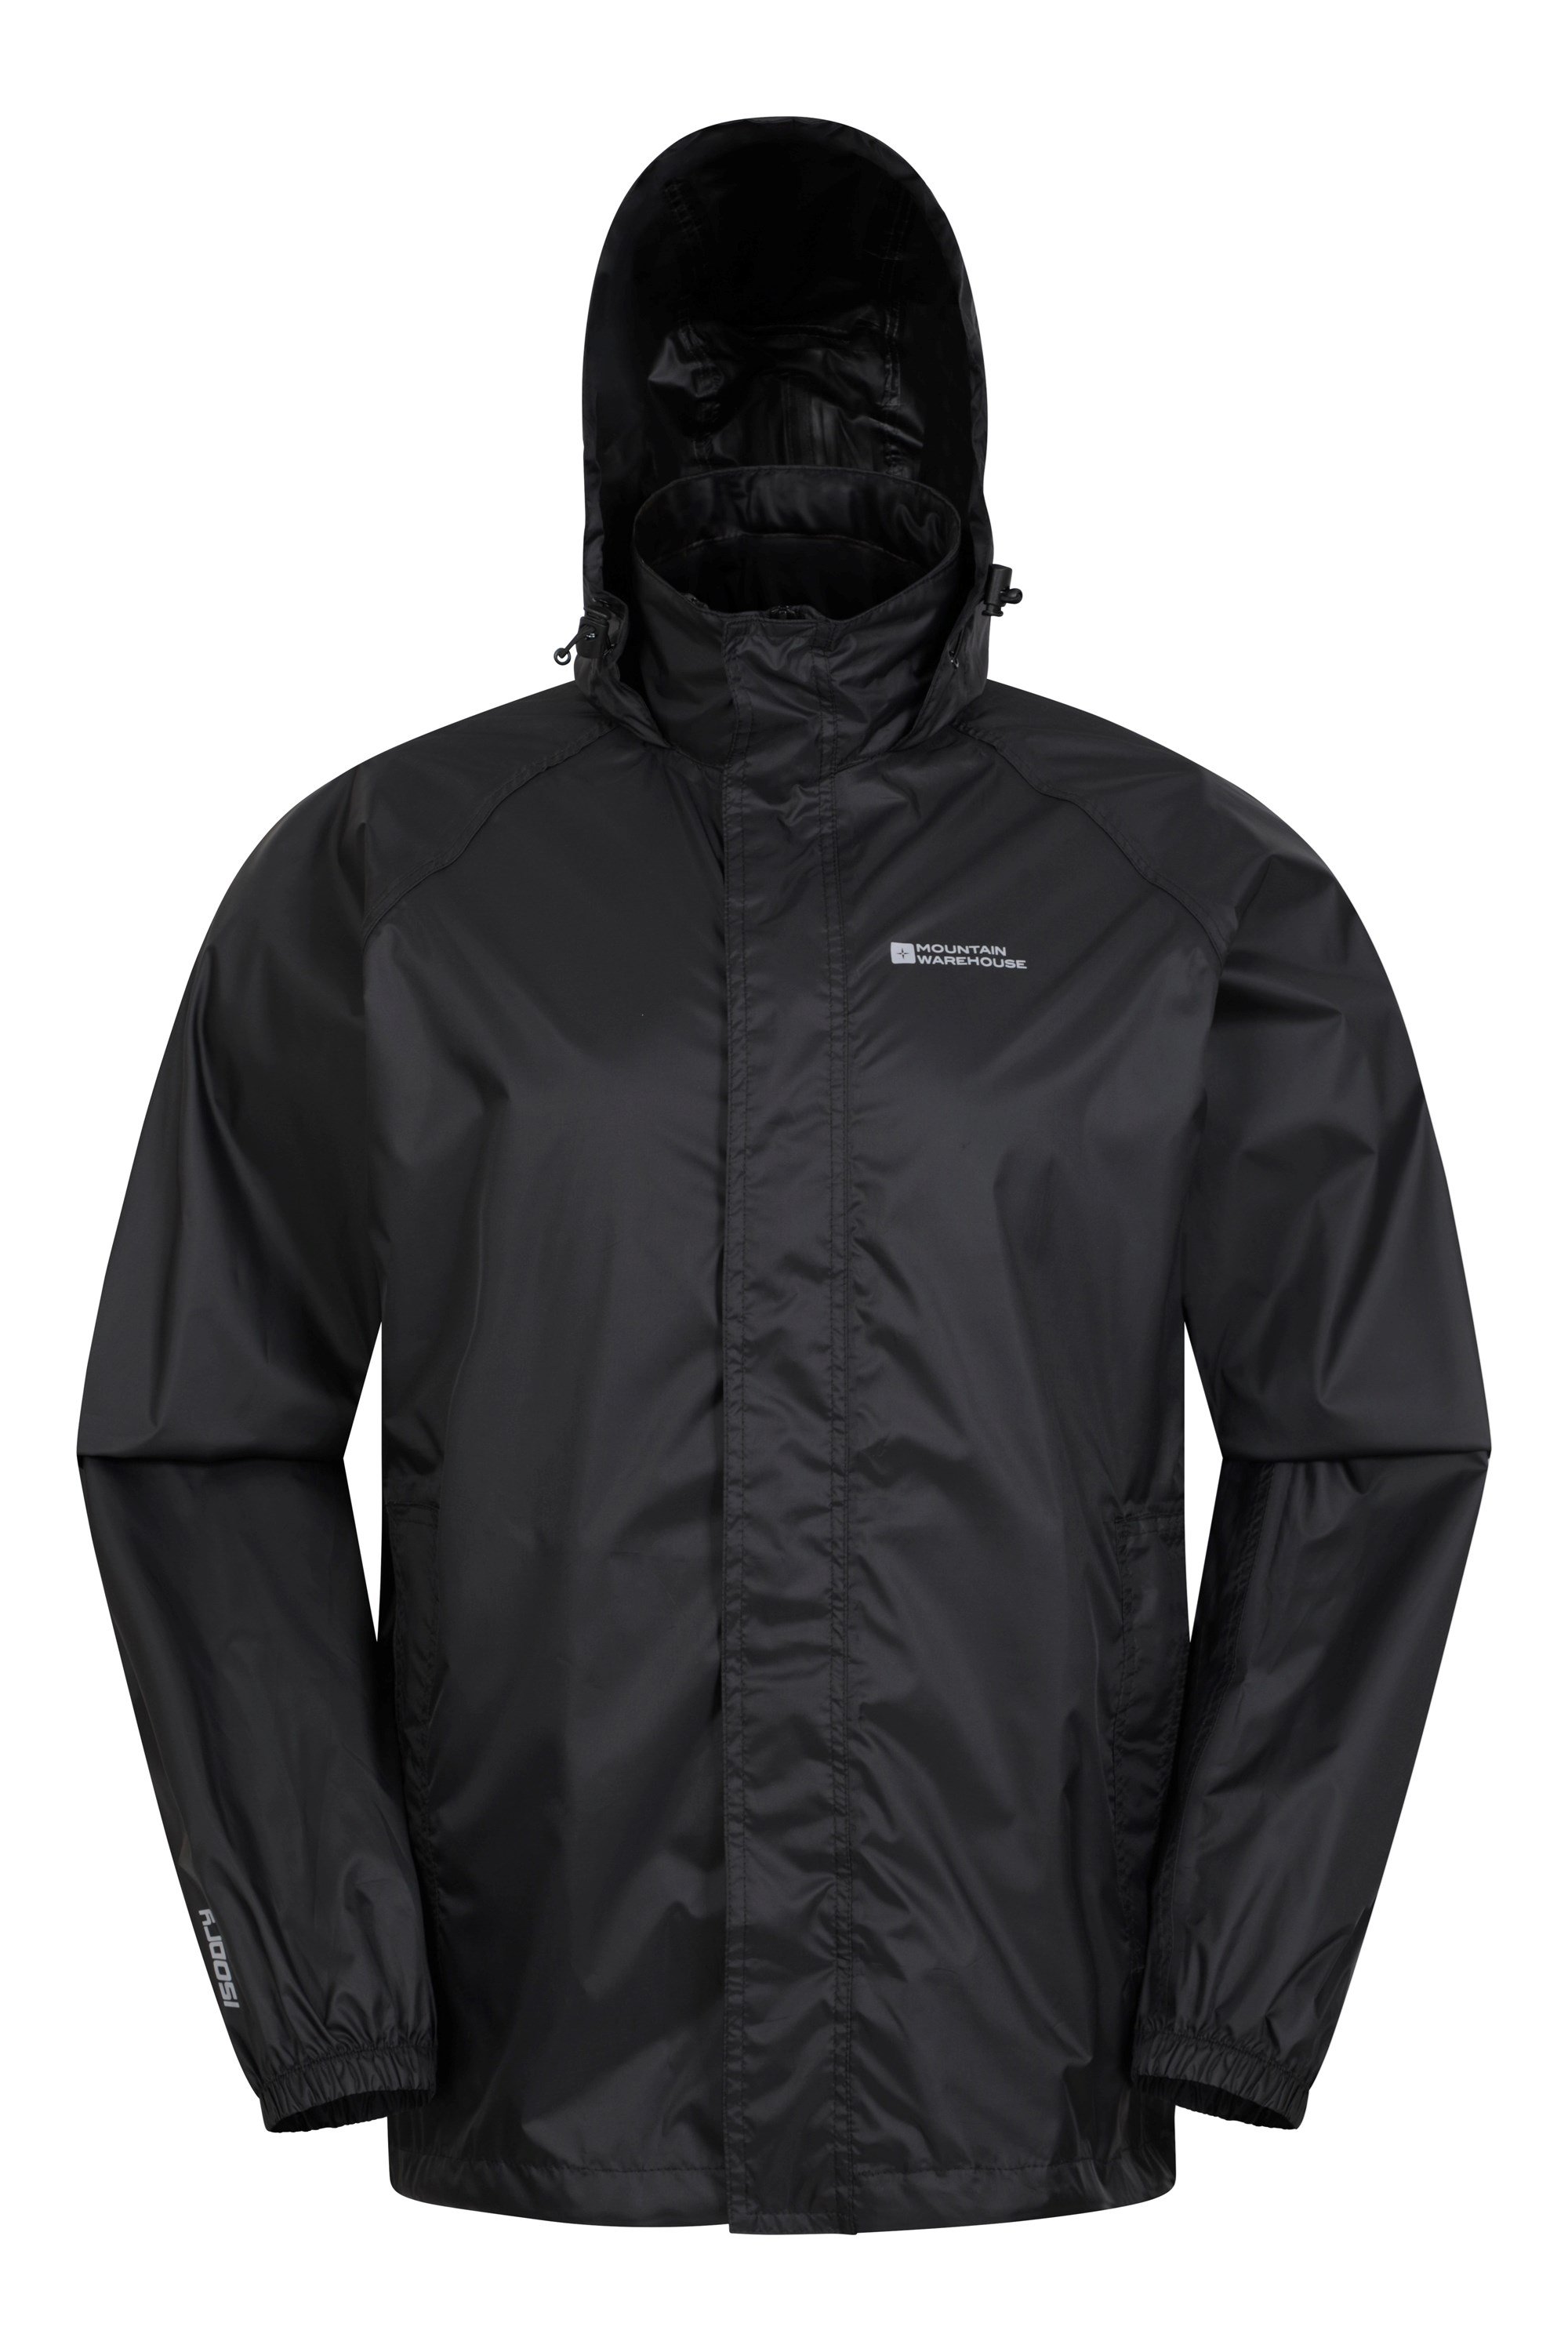 Pakka Mens Waterproof Jacket - Black